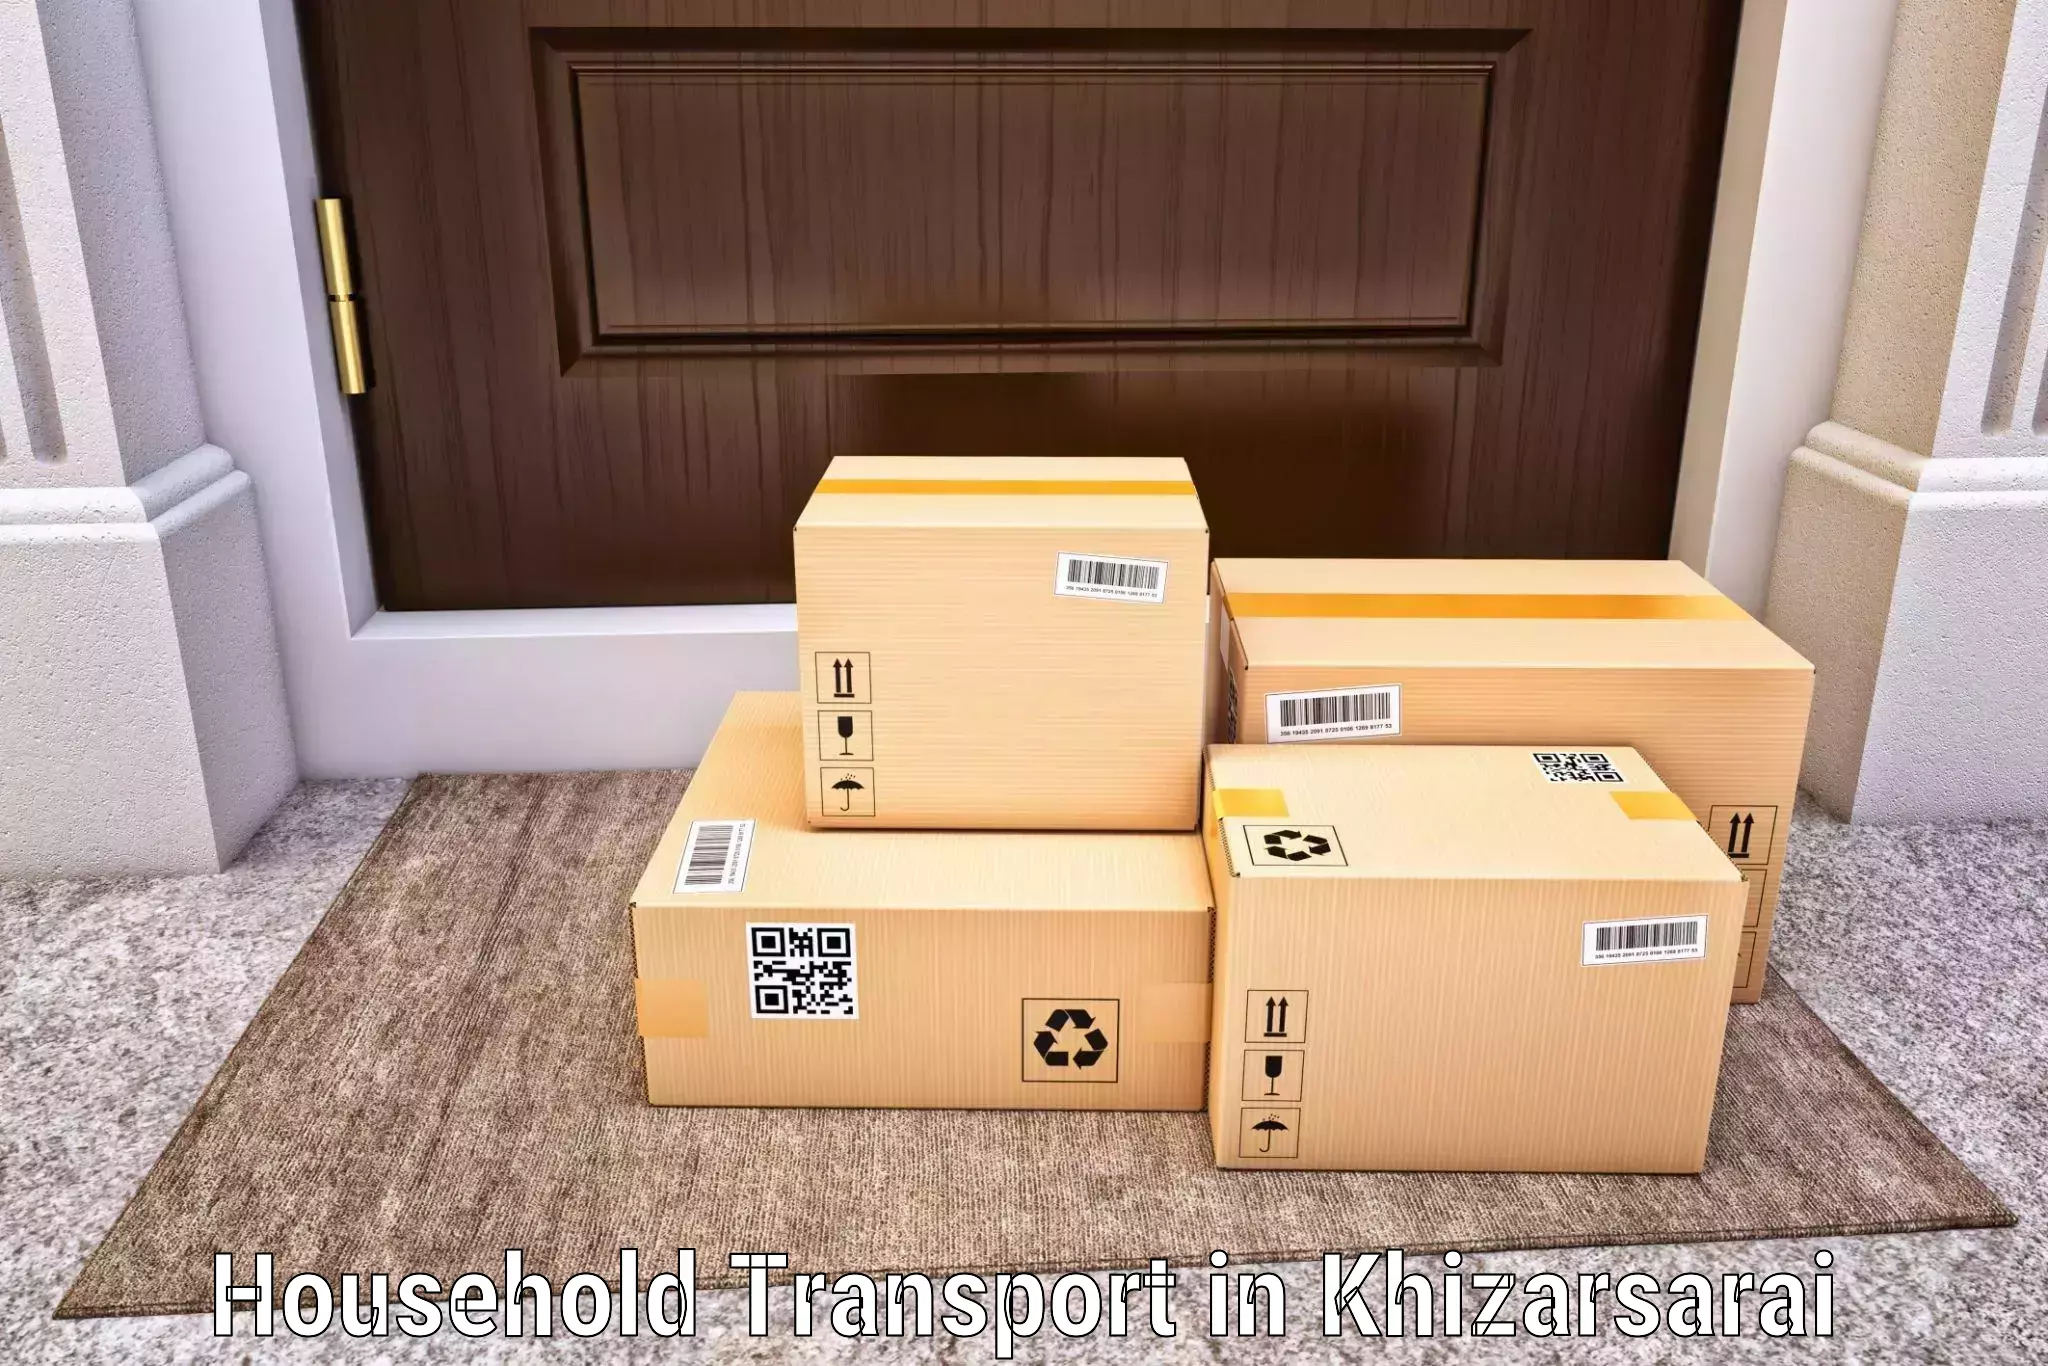 Premium moving services in Khizarsarai